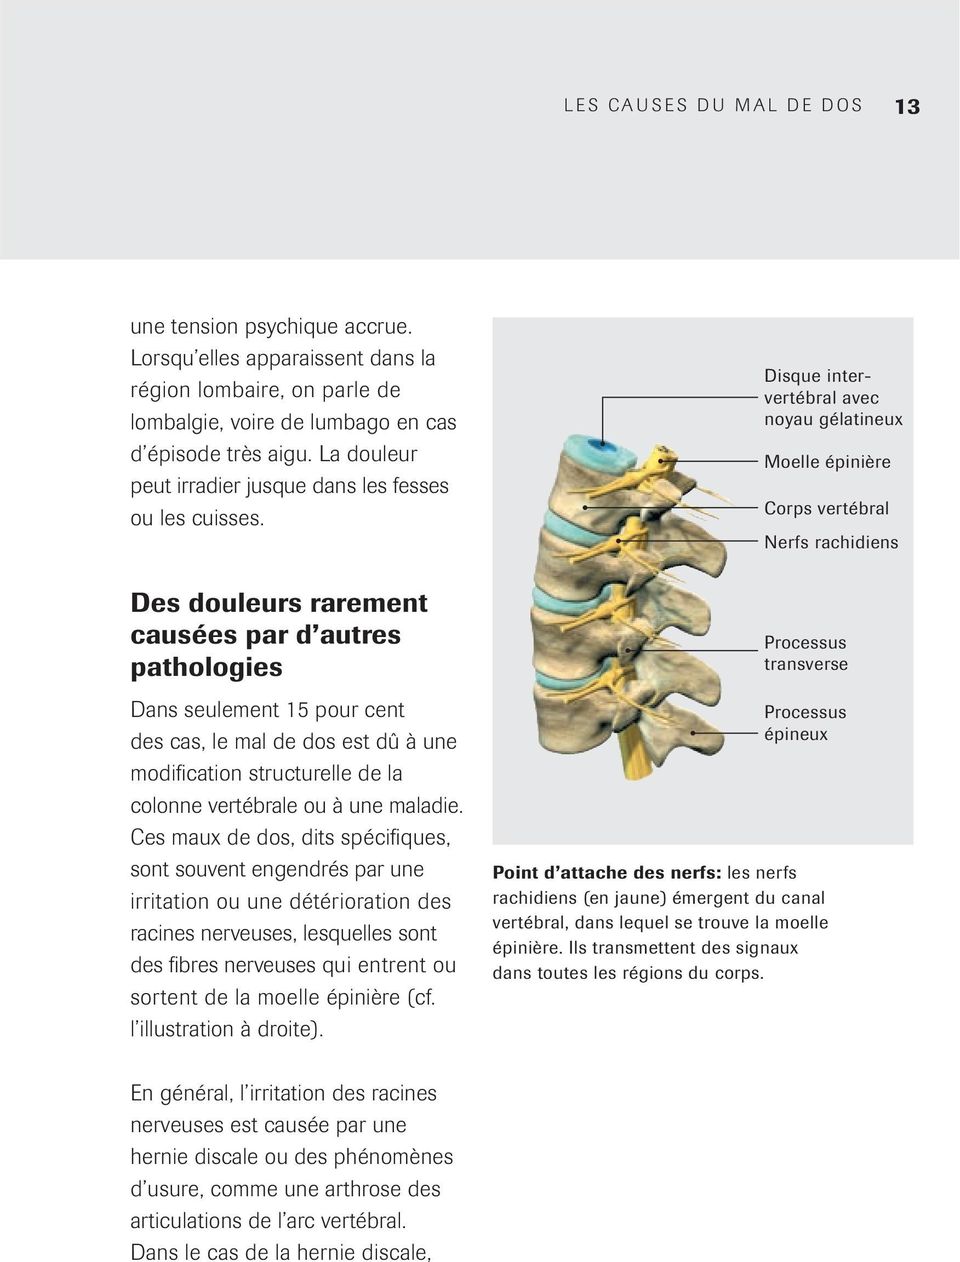 Des douleurs rarement causées par d autres pathologies Dans seulement 15 pour cent des cas, le mal de dos est dû à une modification structurelle de la colonne vertébrale ou à une maladie.